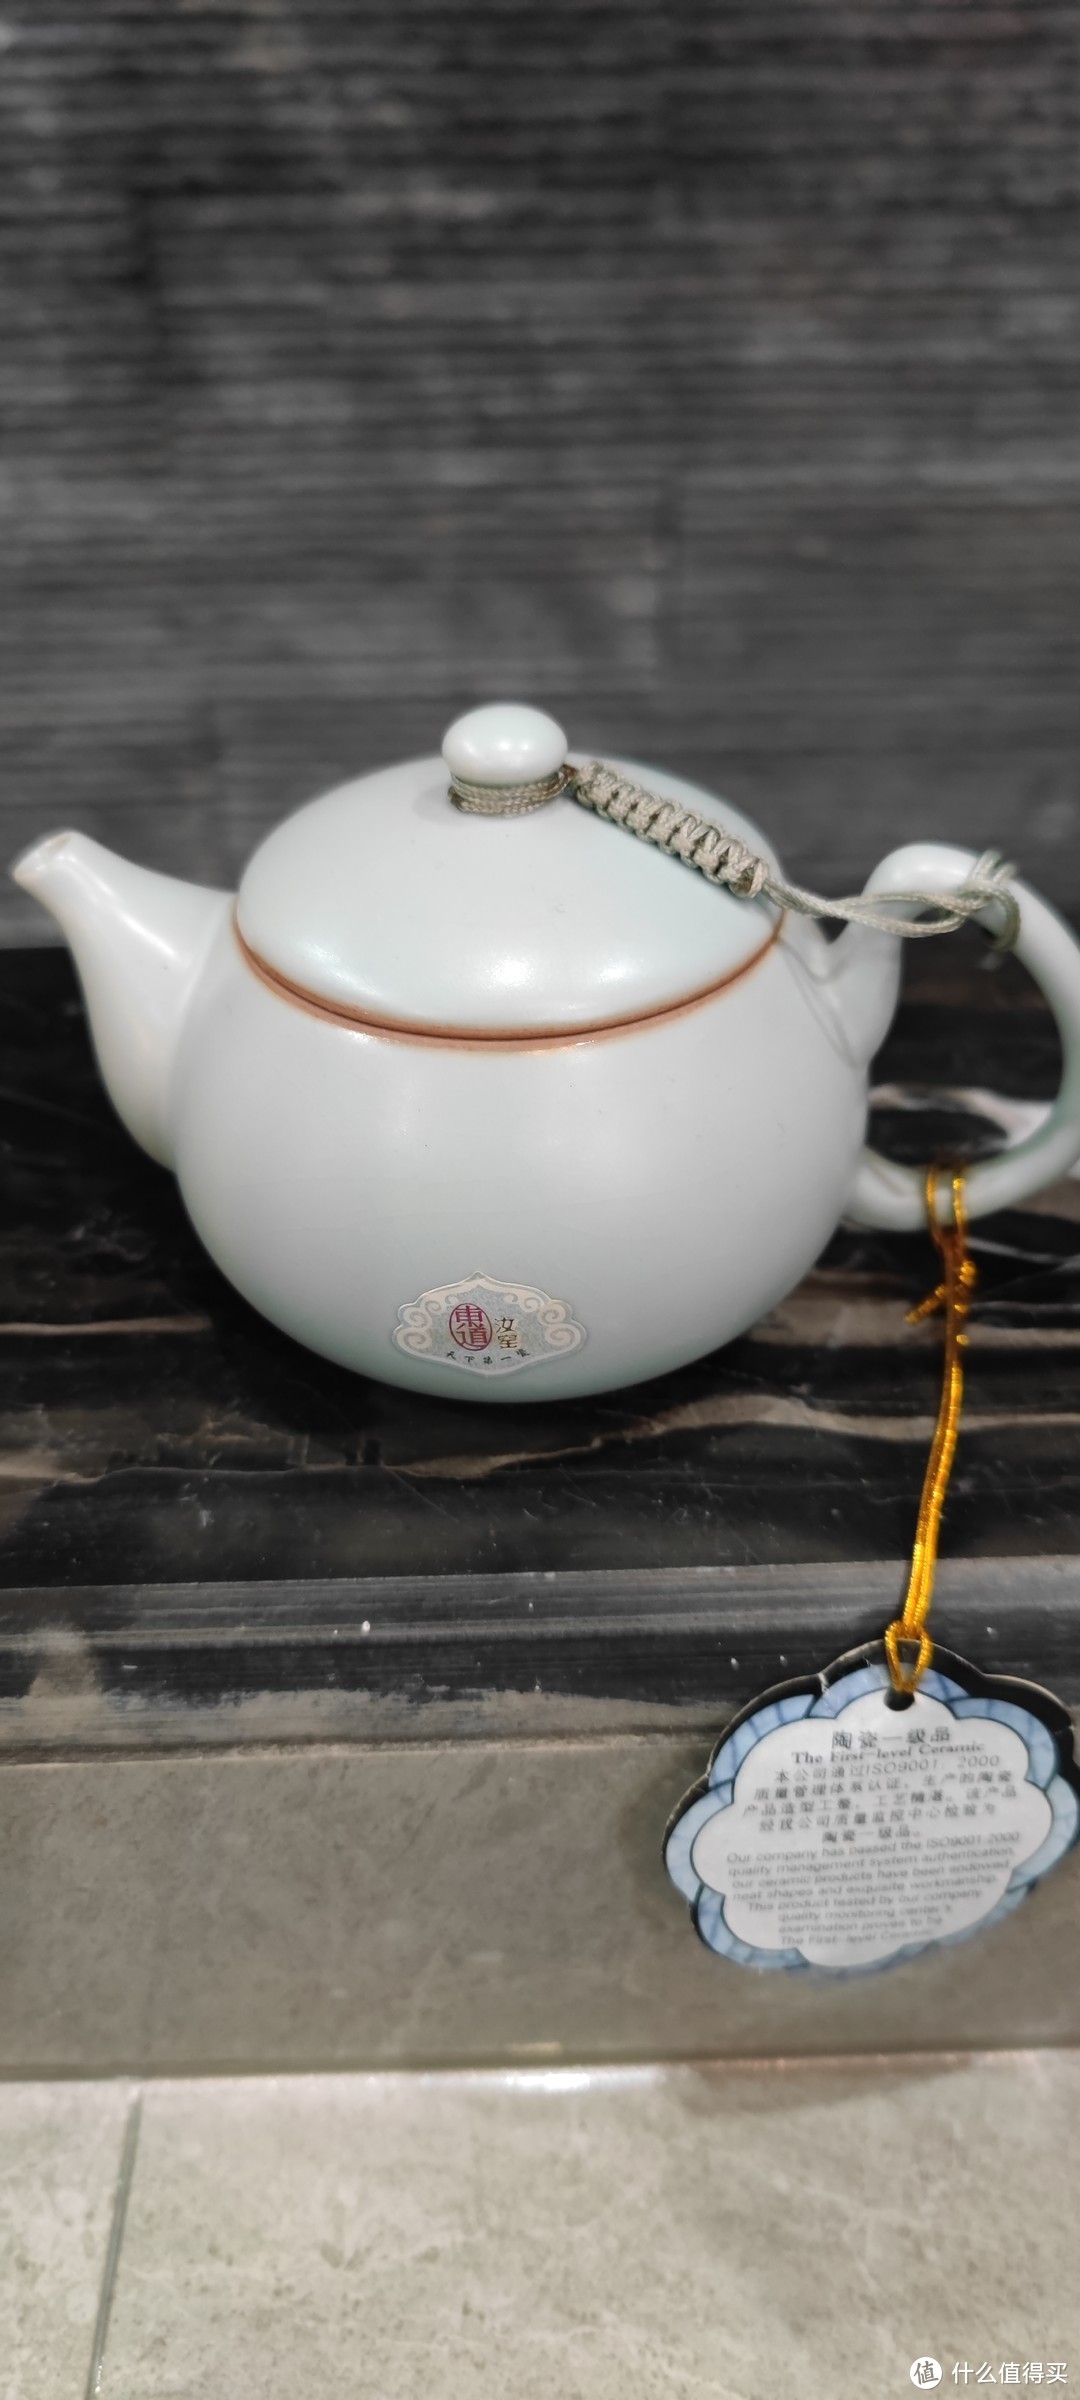 因为喜欢喝茶，但买了一套东道汝瓷茶具后。。。 。。。